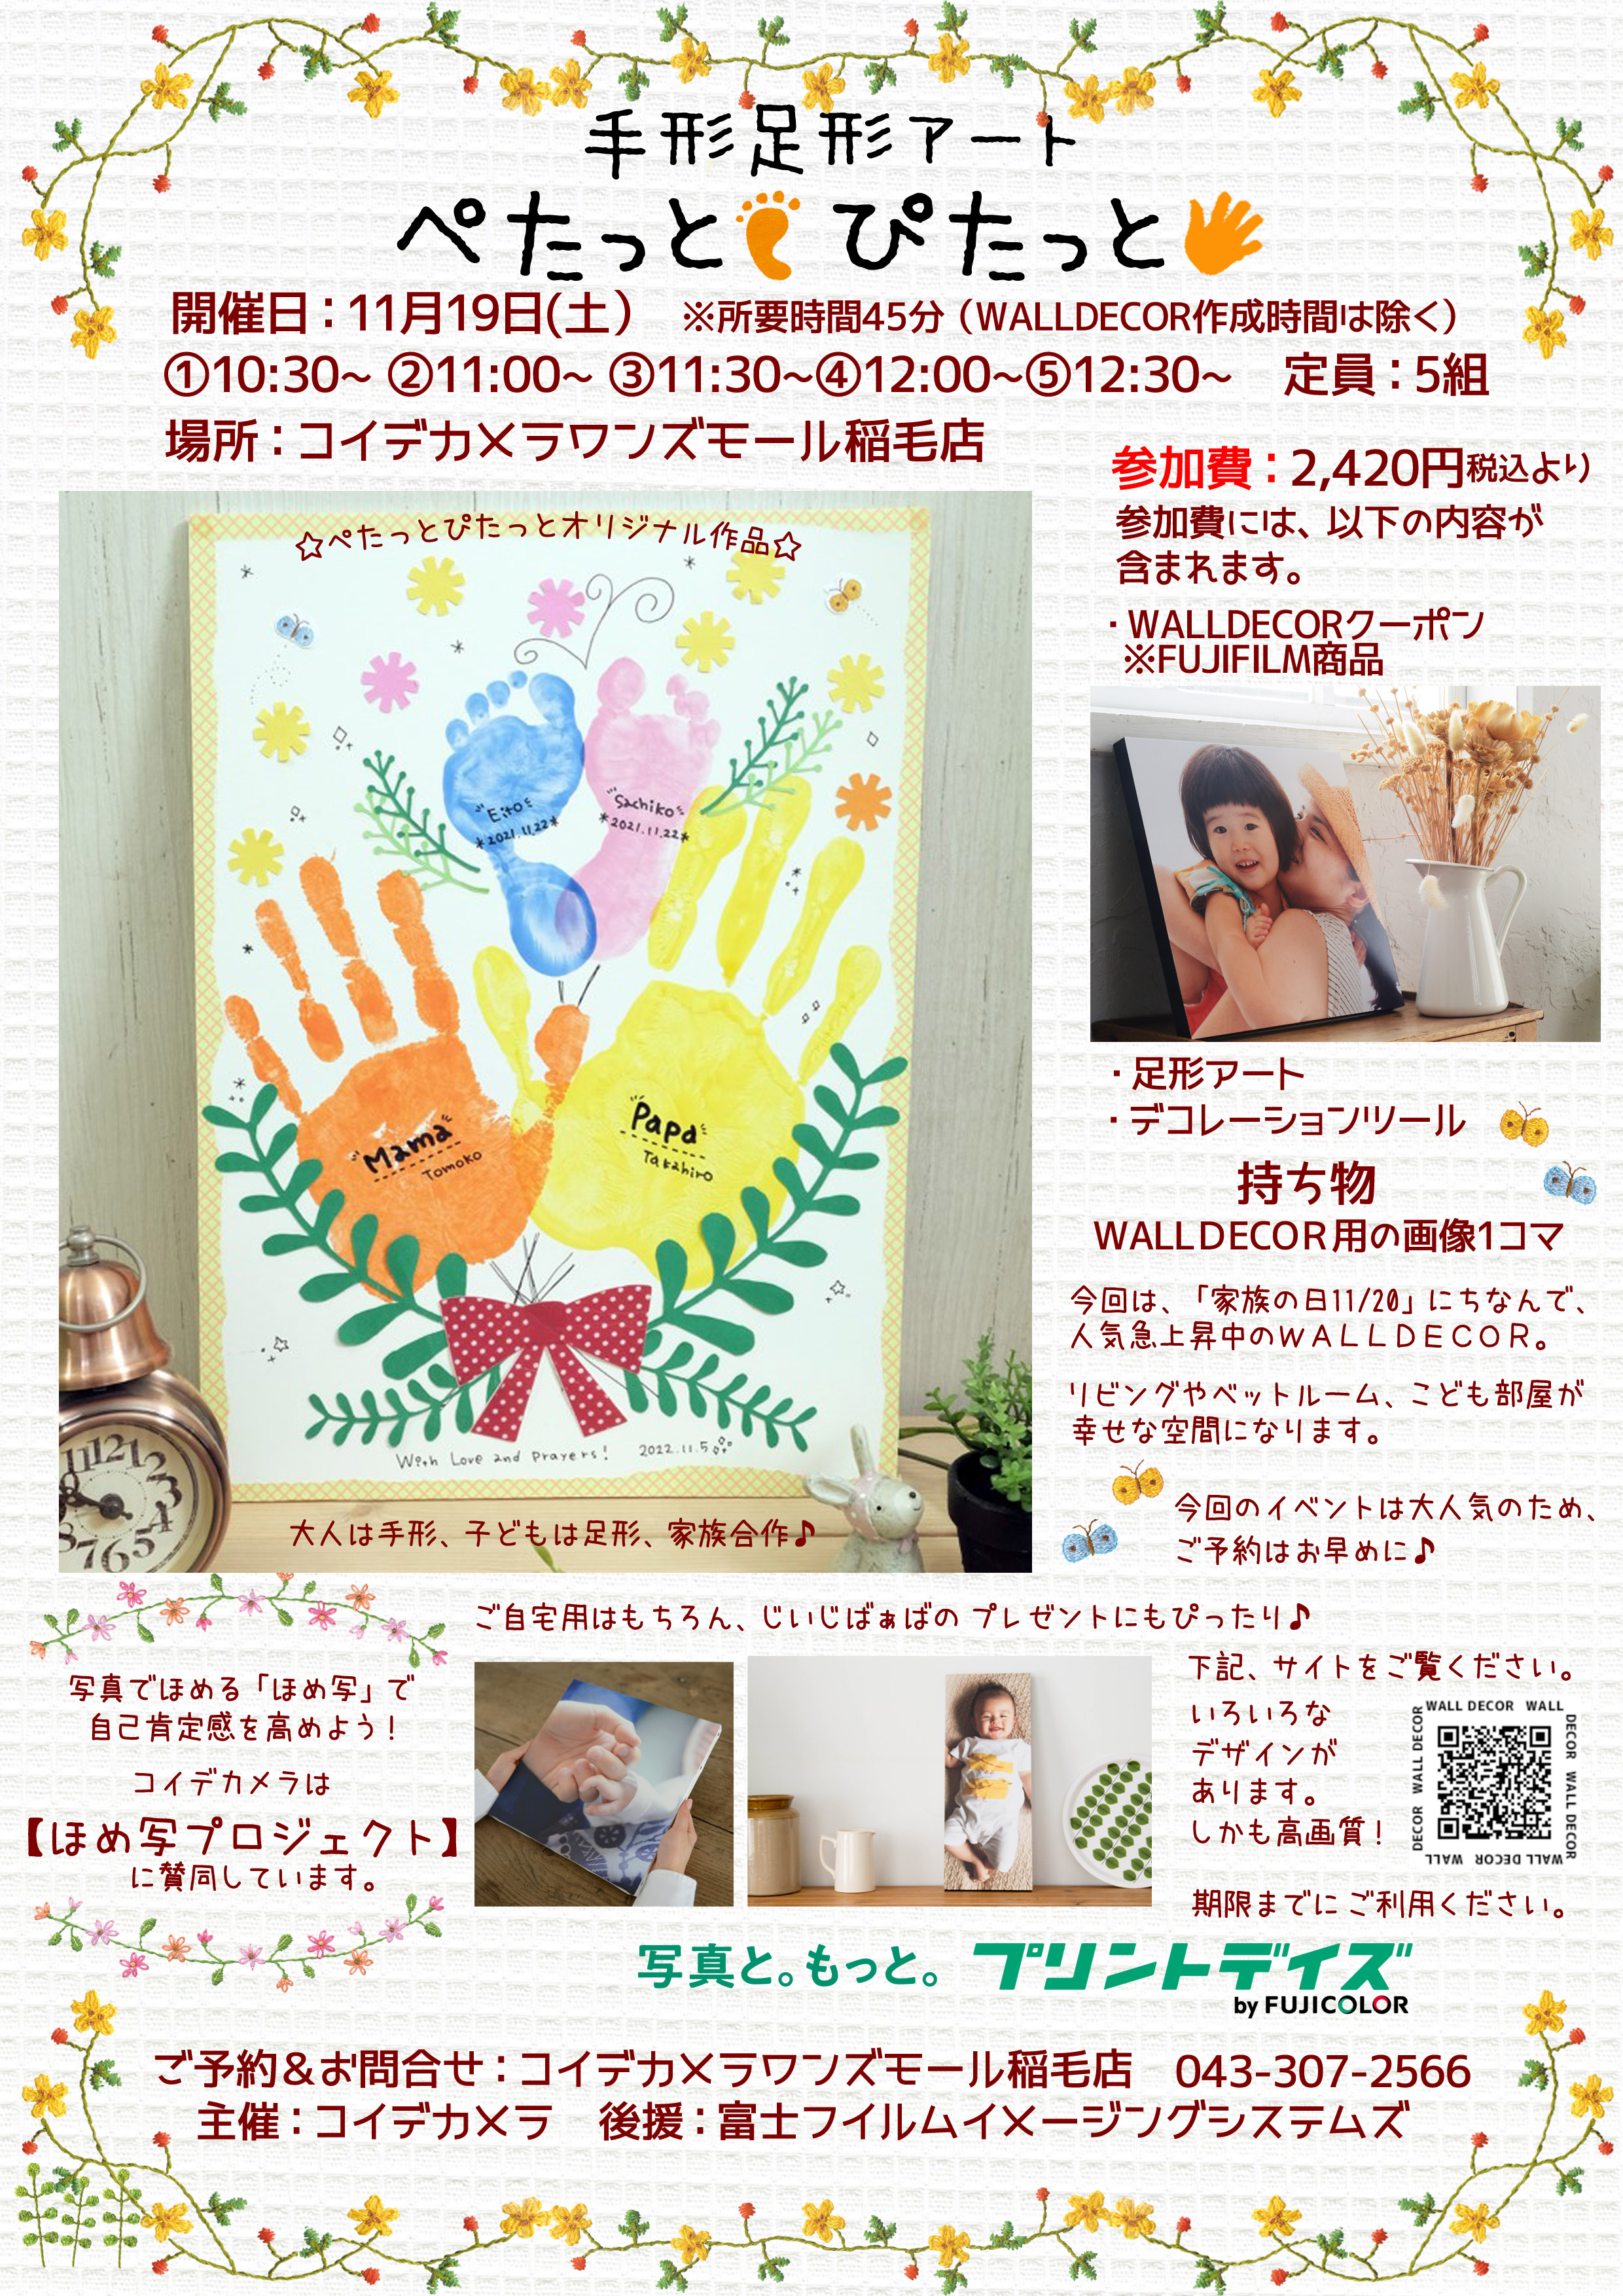 家族の手形足形アート開催:イメージ